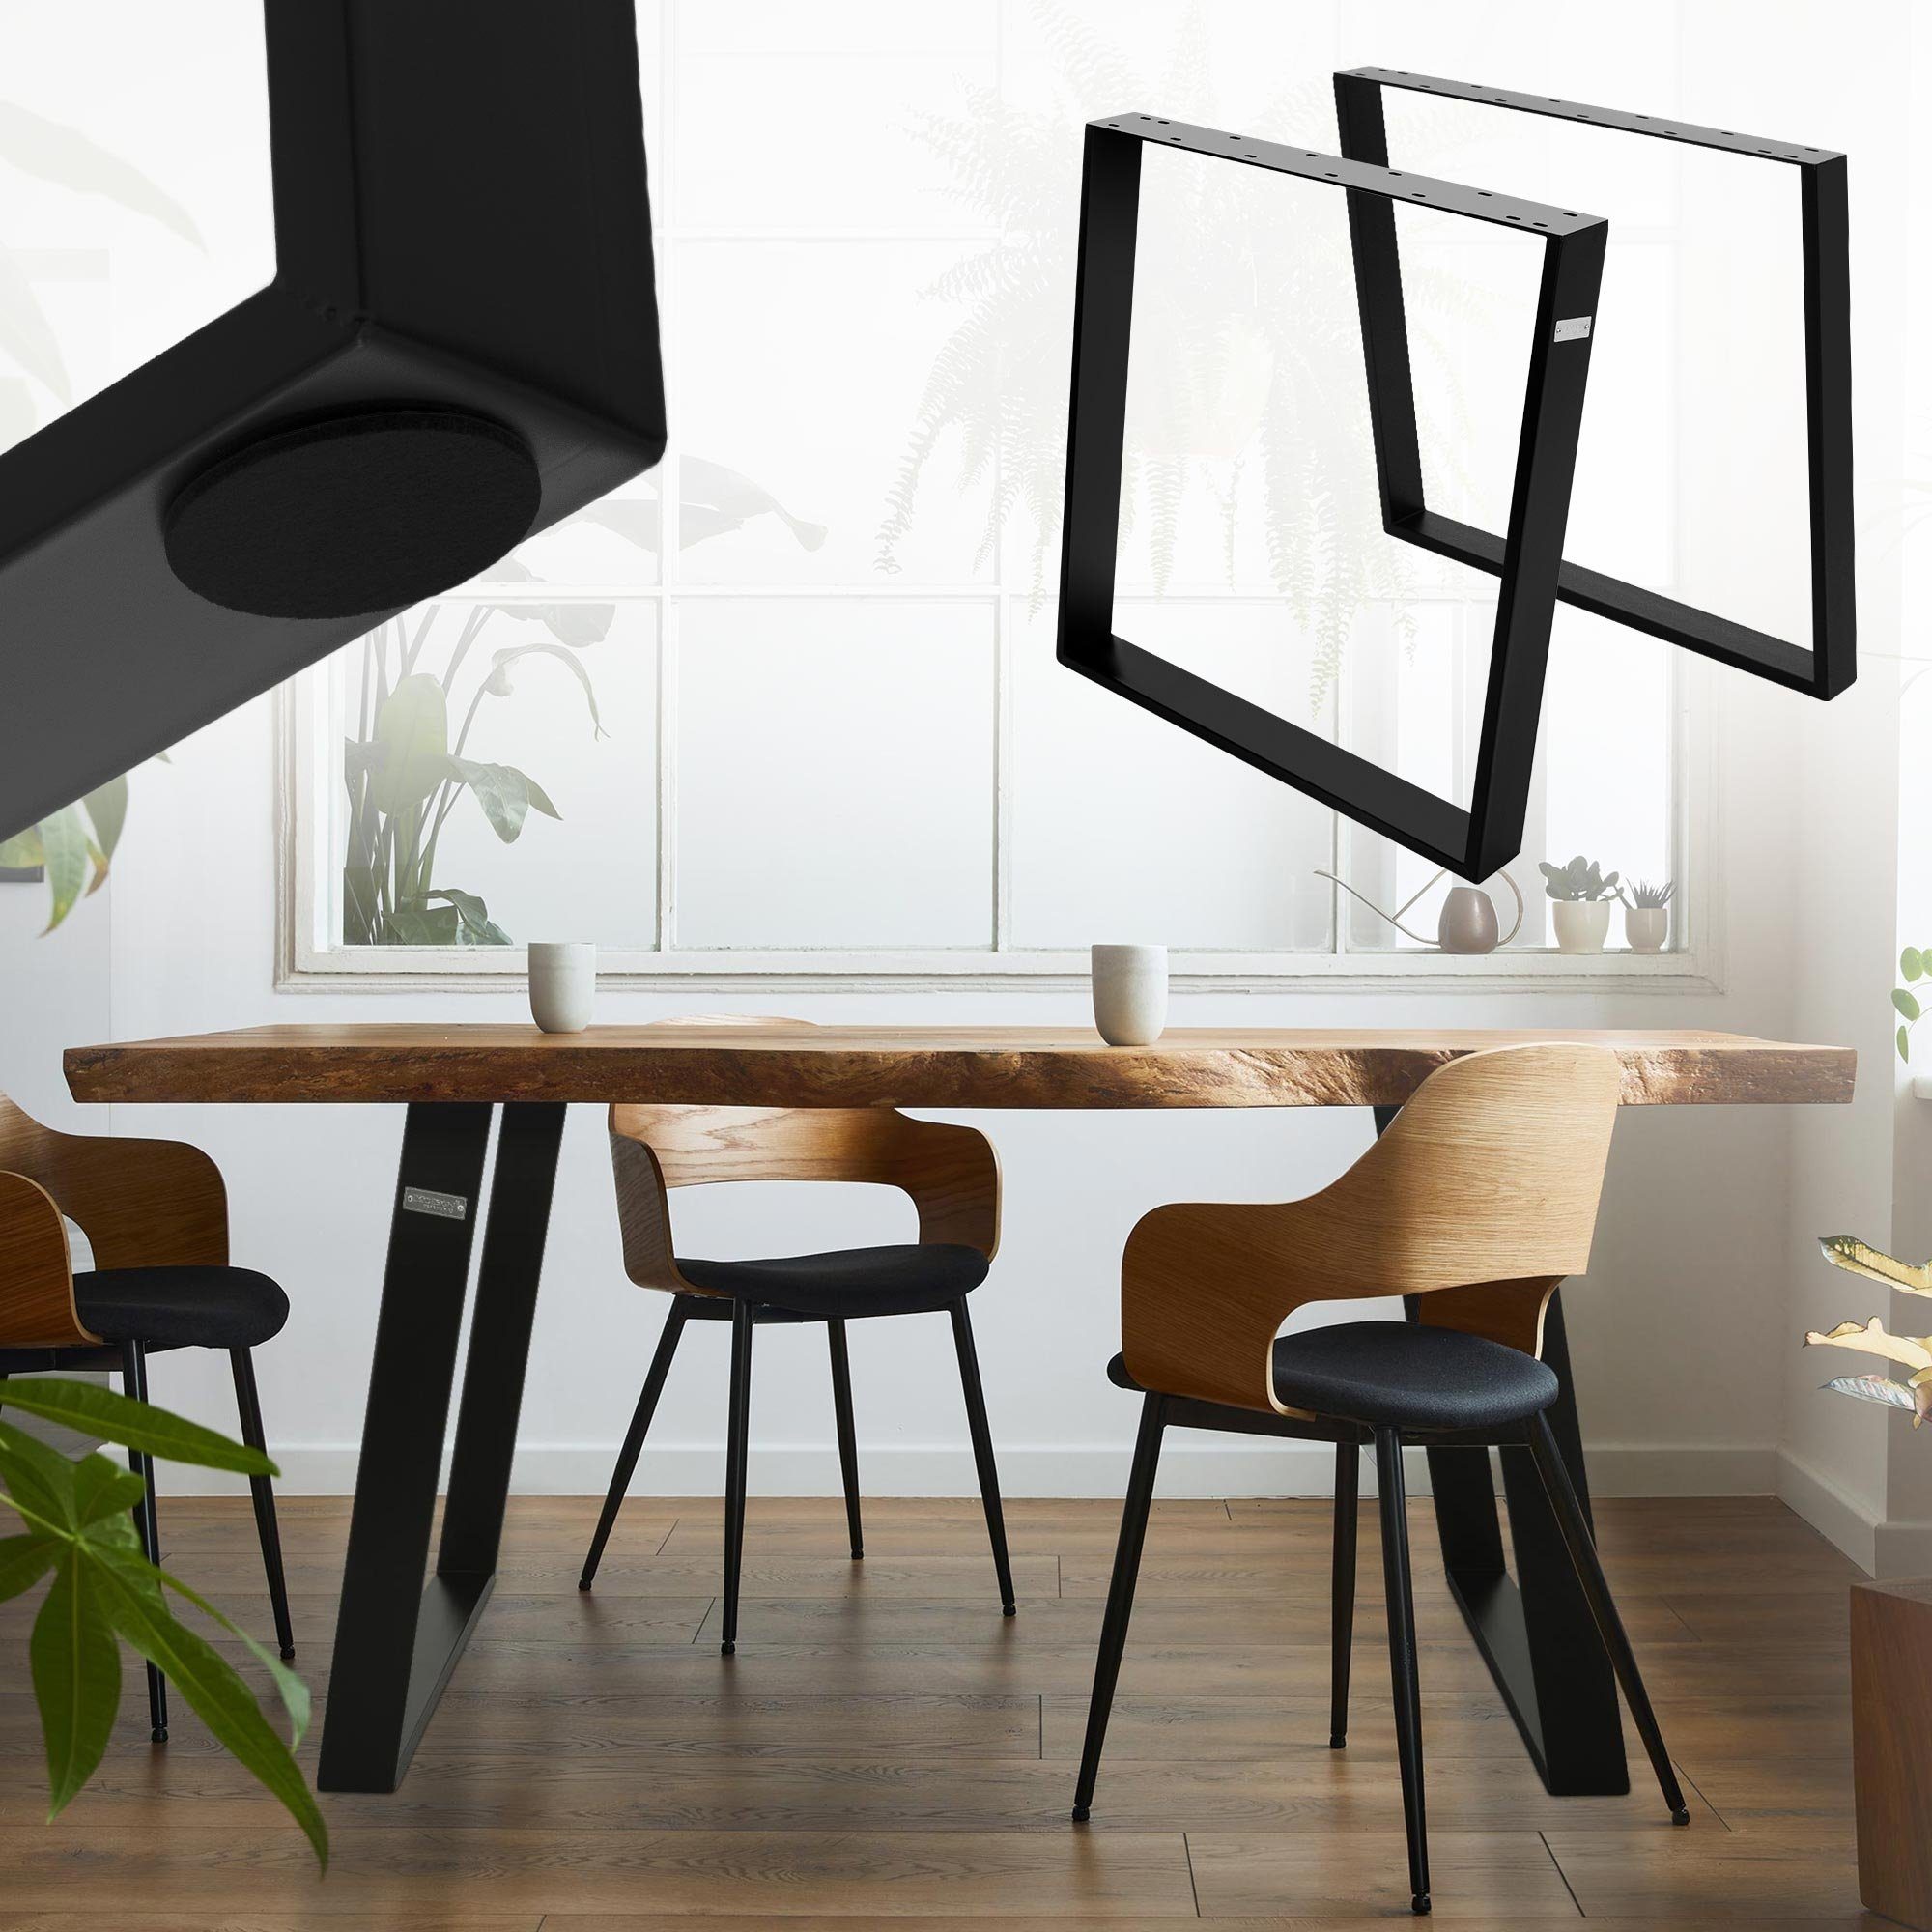 ML-DESIGN Tischbein Möbelkufen Tischuntergestell Möbelfüße für Esstisch/Schreibtisch, 2er Set 80GRAD Neigung 75x72cm Schwarz Schräg Metall